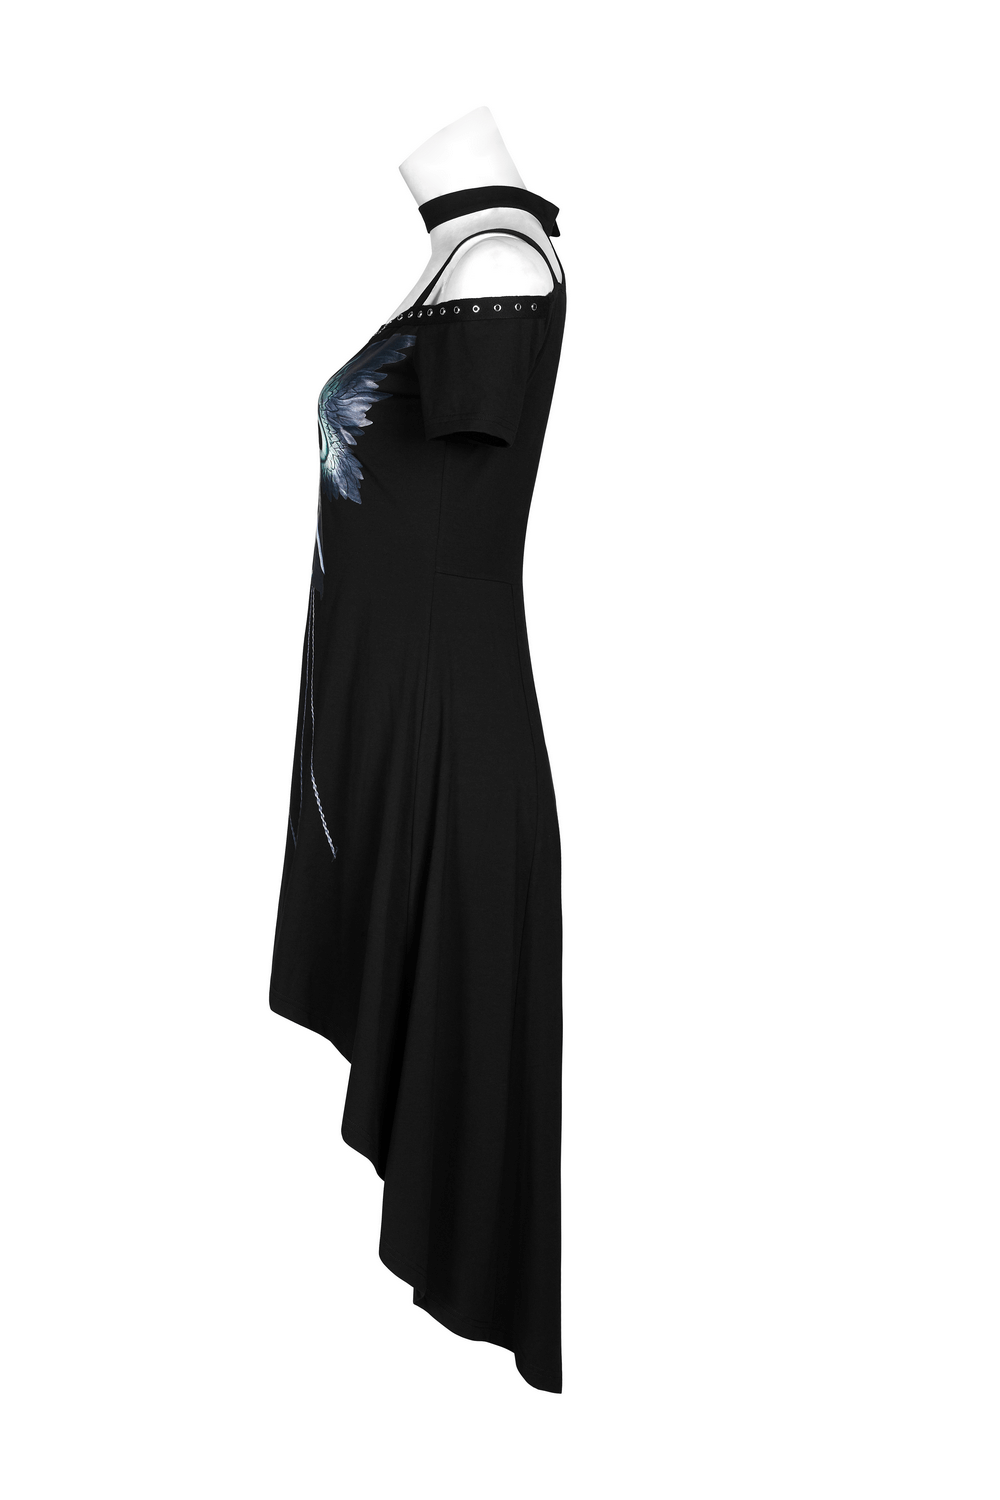 Black Off-Shoulder Fairy Print Dress with Rivet Detailing